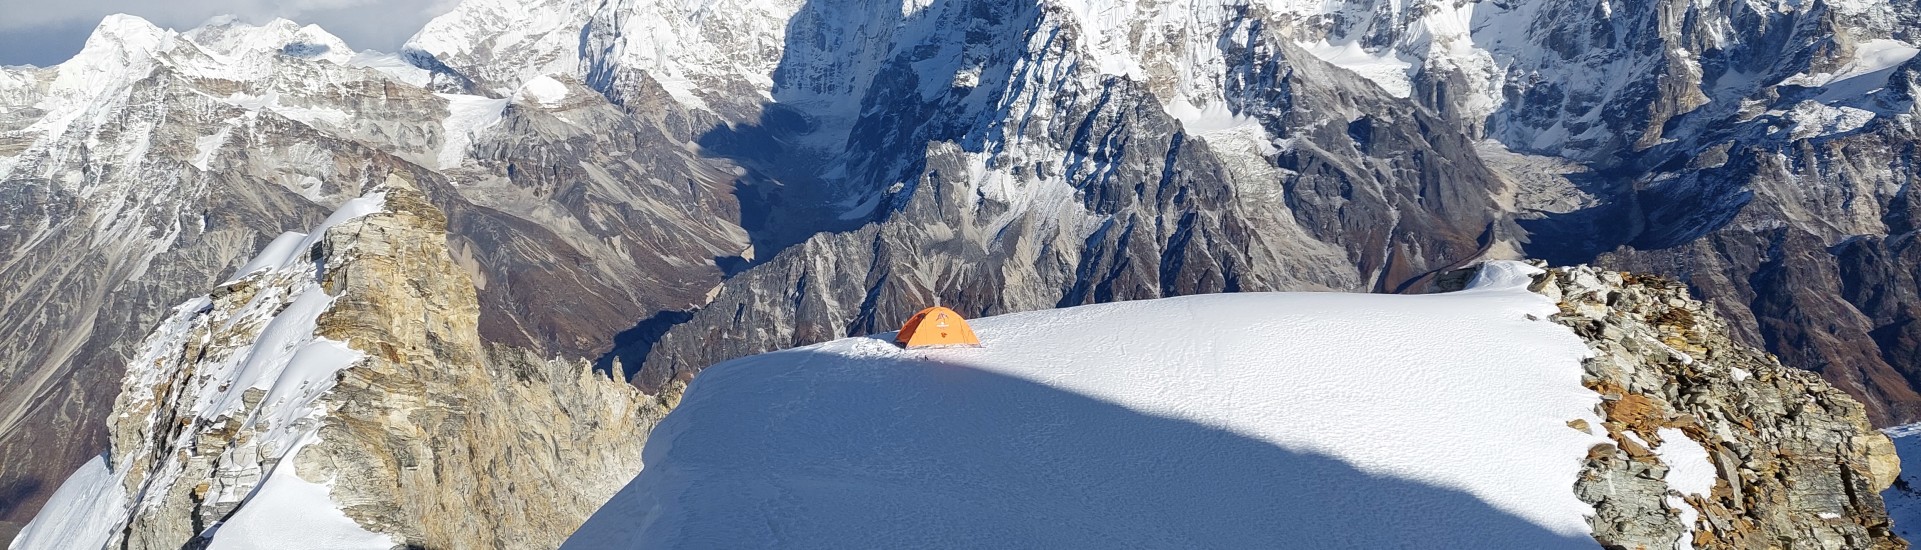 Sato Pyramide: una cima inviolata in Himalaya per Silvia Loreggian e Stefano Ragazzo